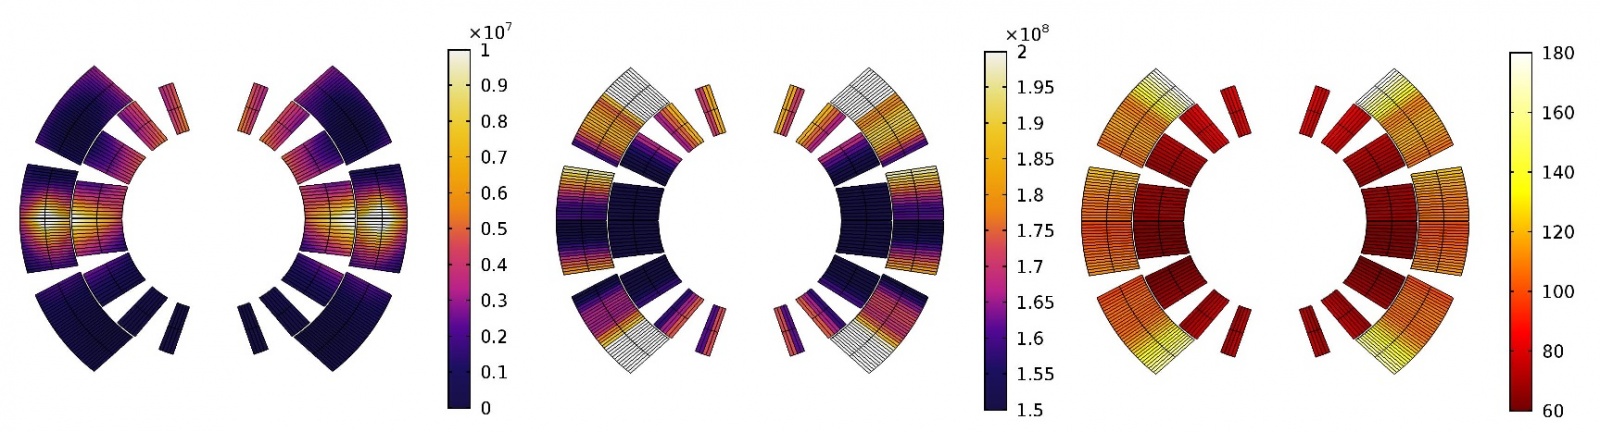 Анализ срывов сверхпроводимости магнитов Большого адронного коллайдера в CERN - 7